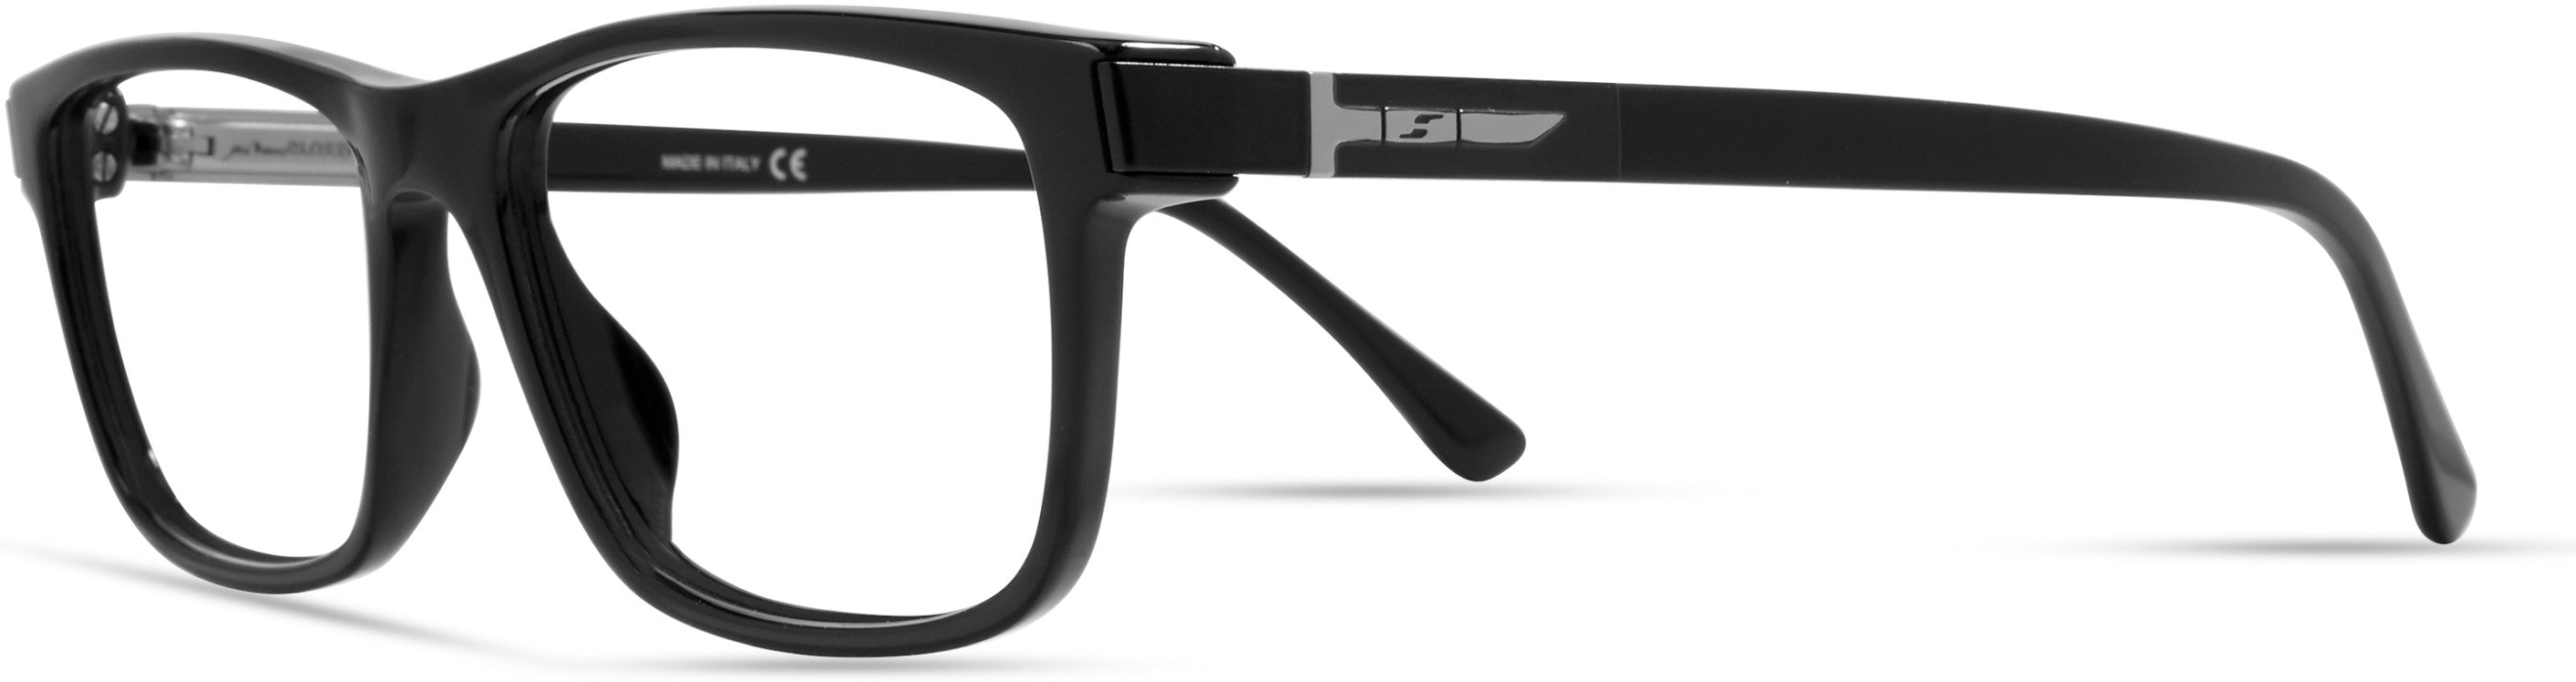  Elasta 1643 Rectangular Eyeglasses 0807-0807  Black (00 Demo Lens)